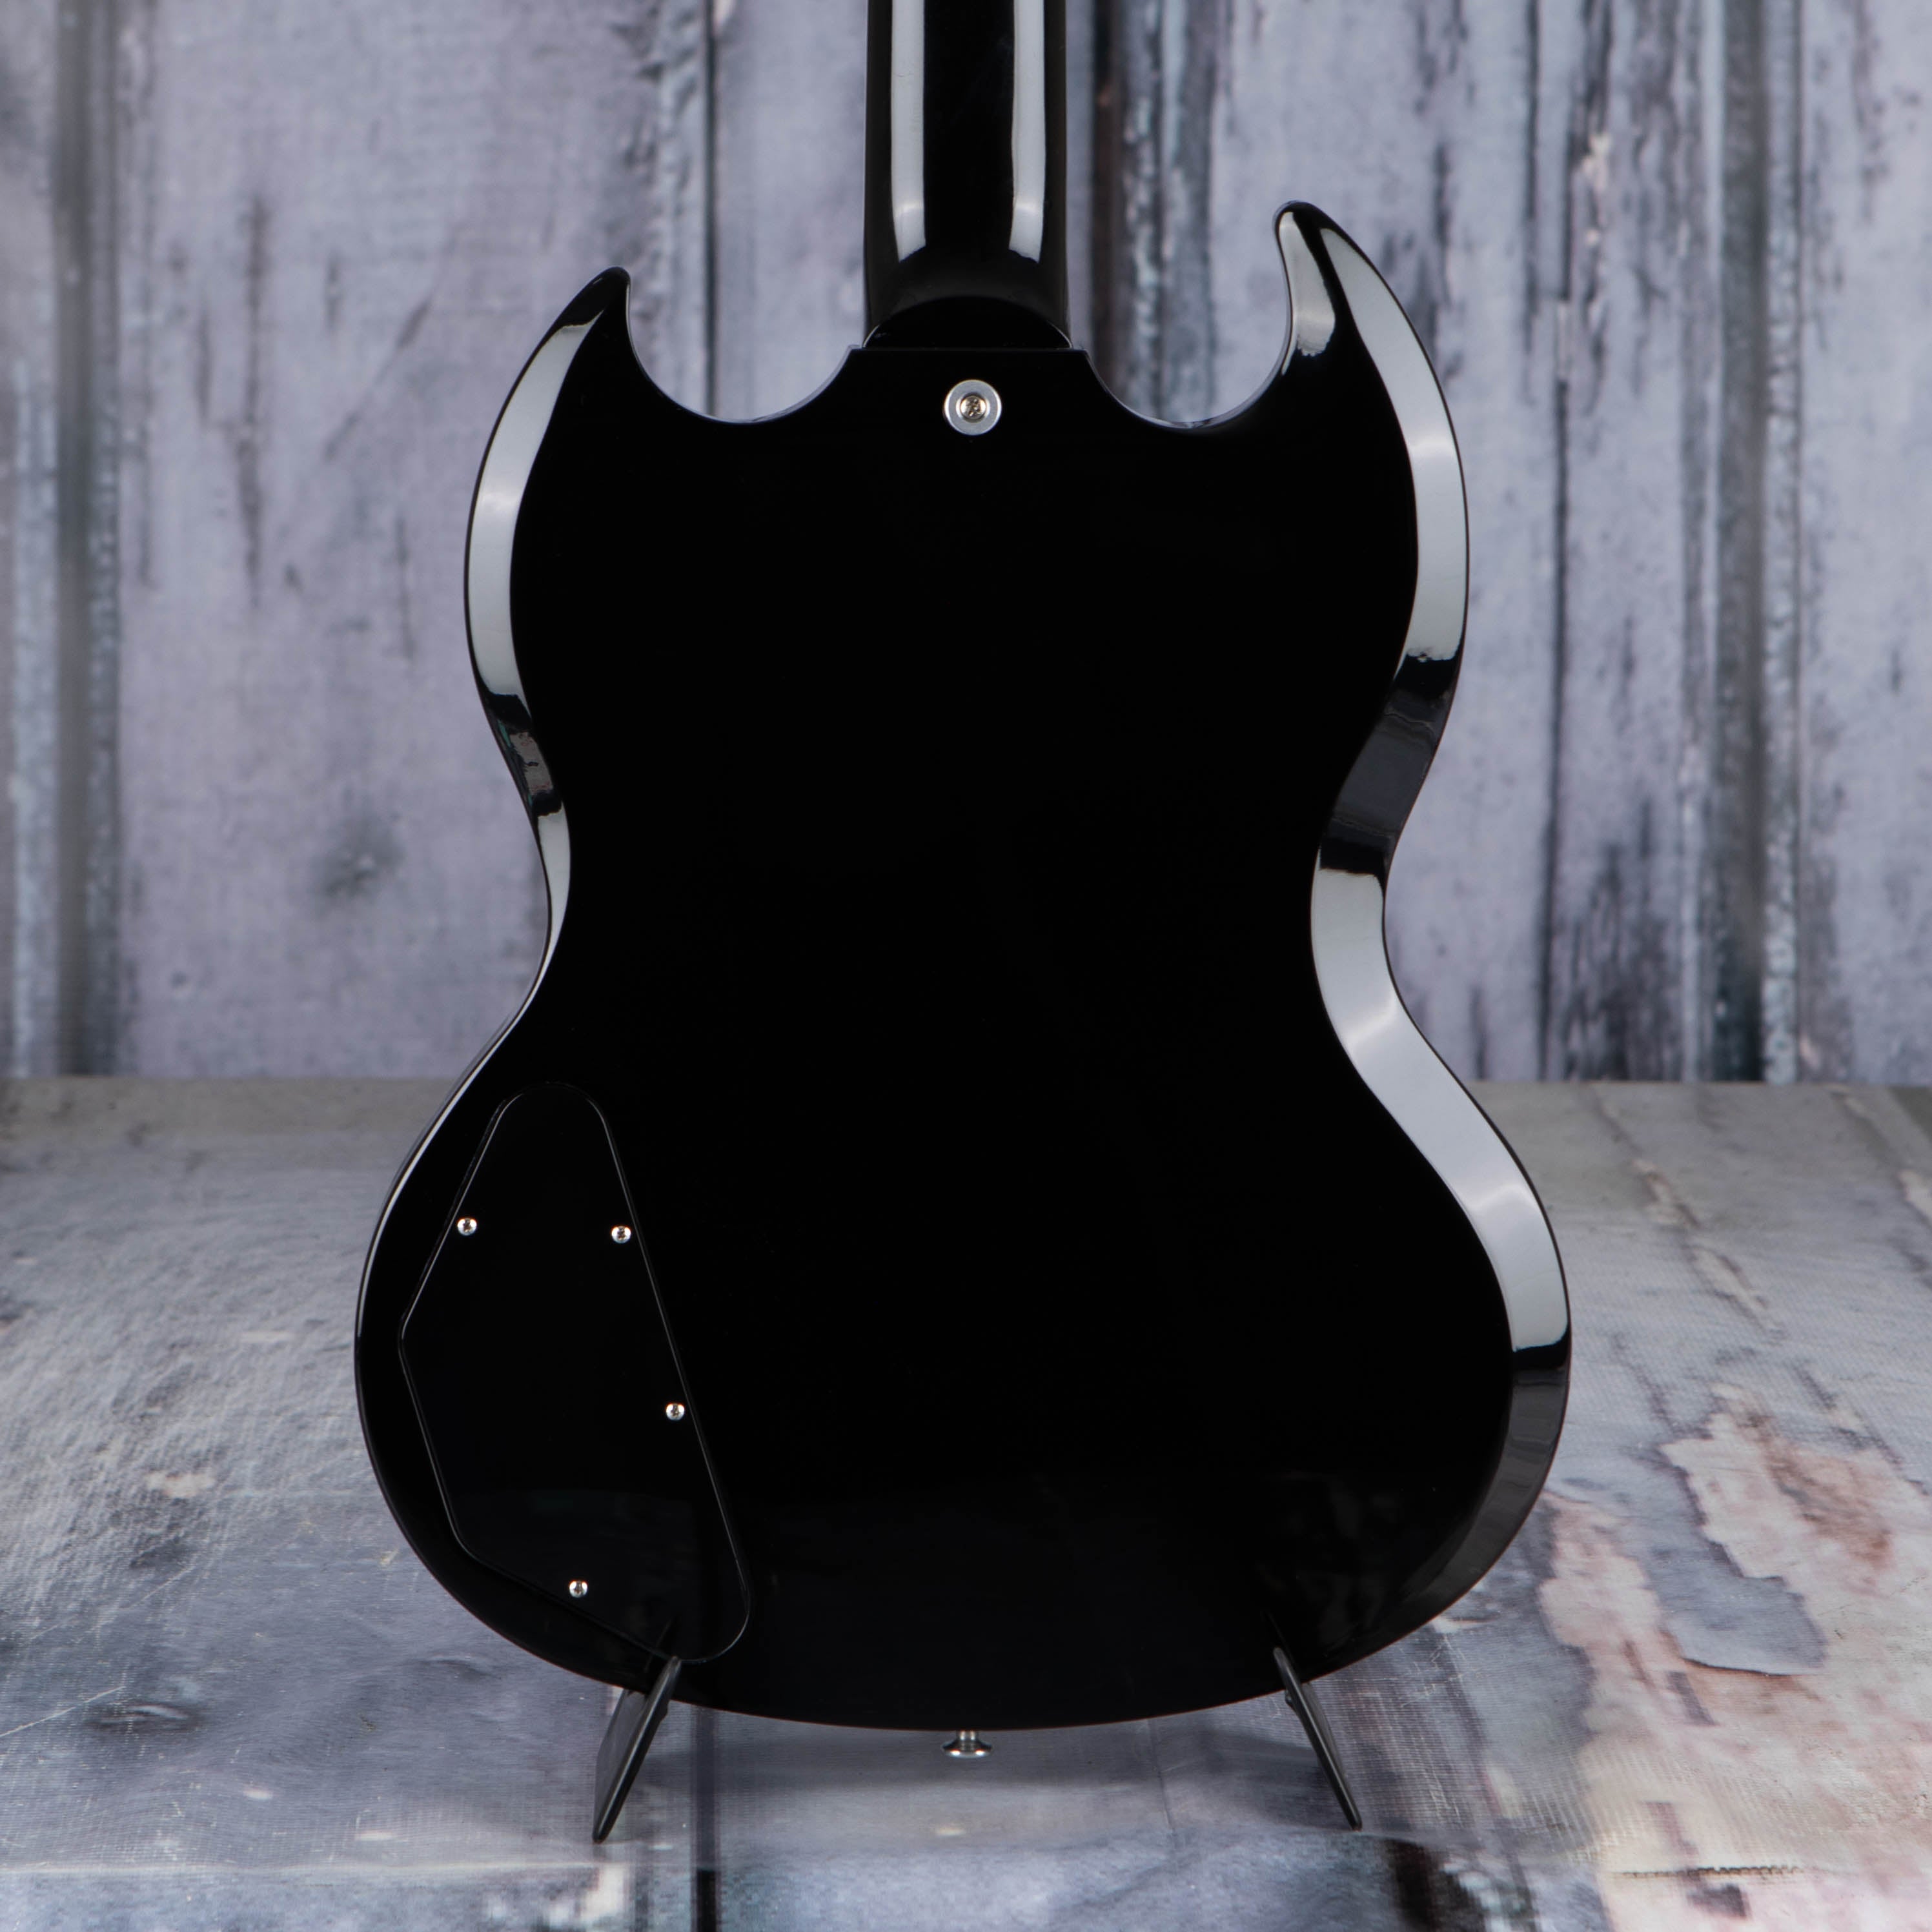 Gibson USA SG Standard '61 Electric Guitar, Cardinal Red Burst, back closeup